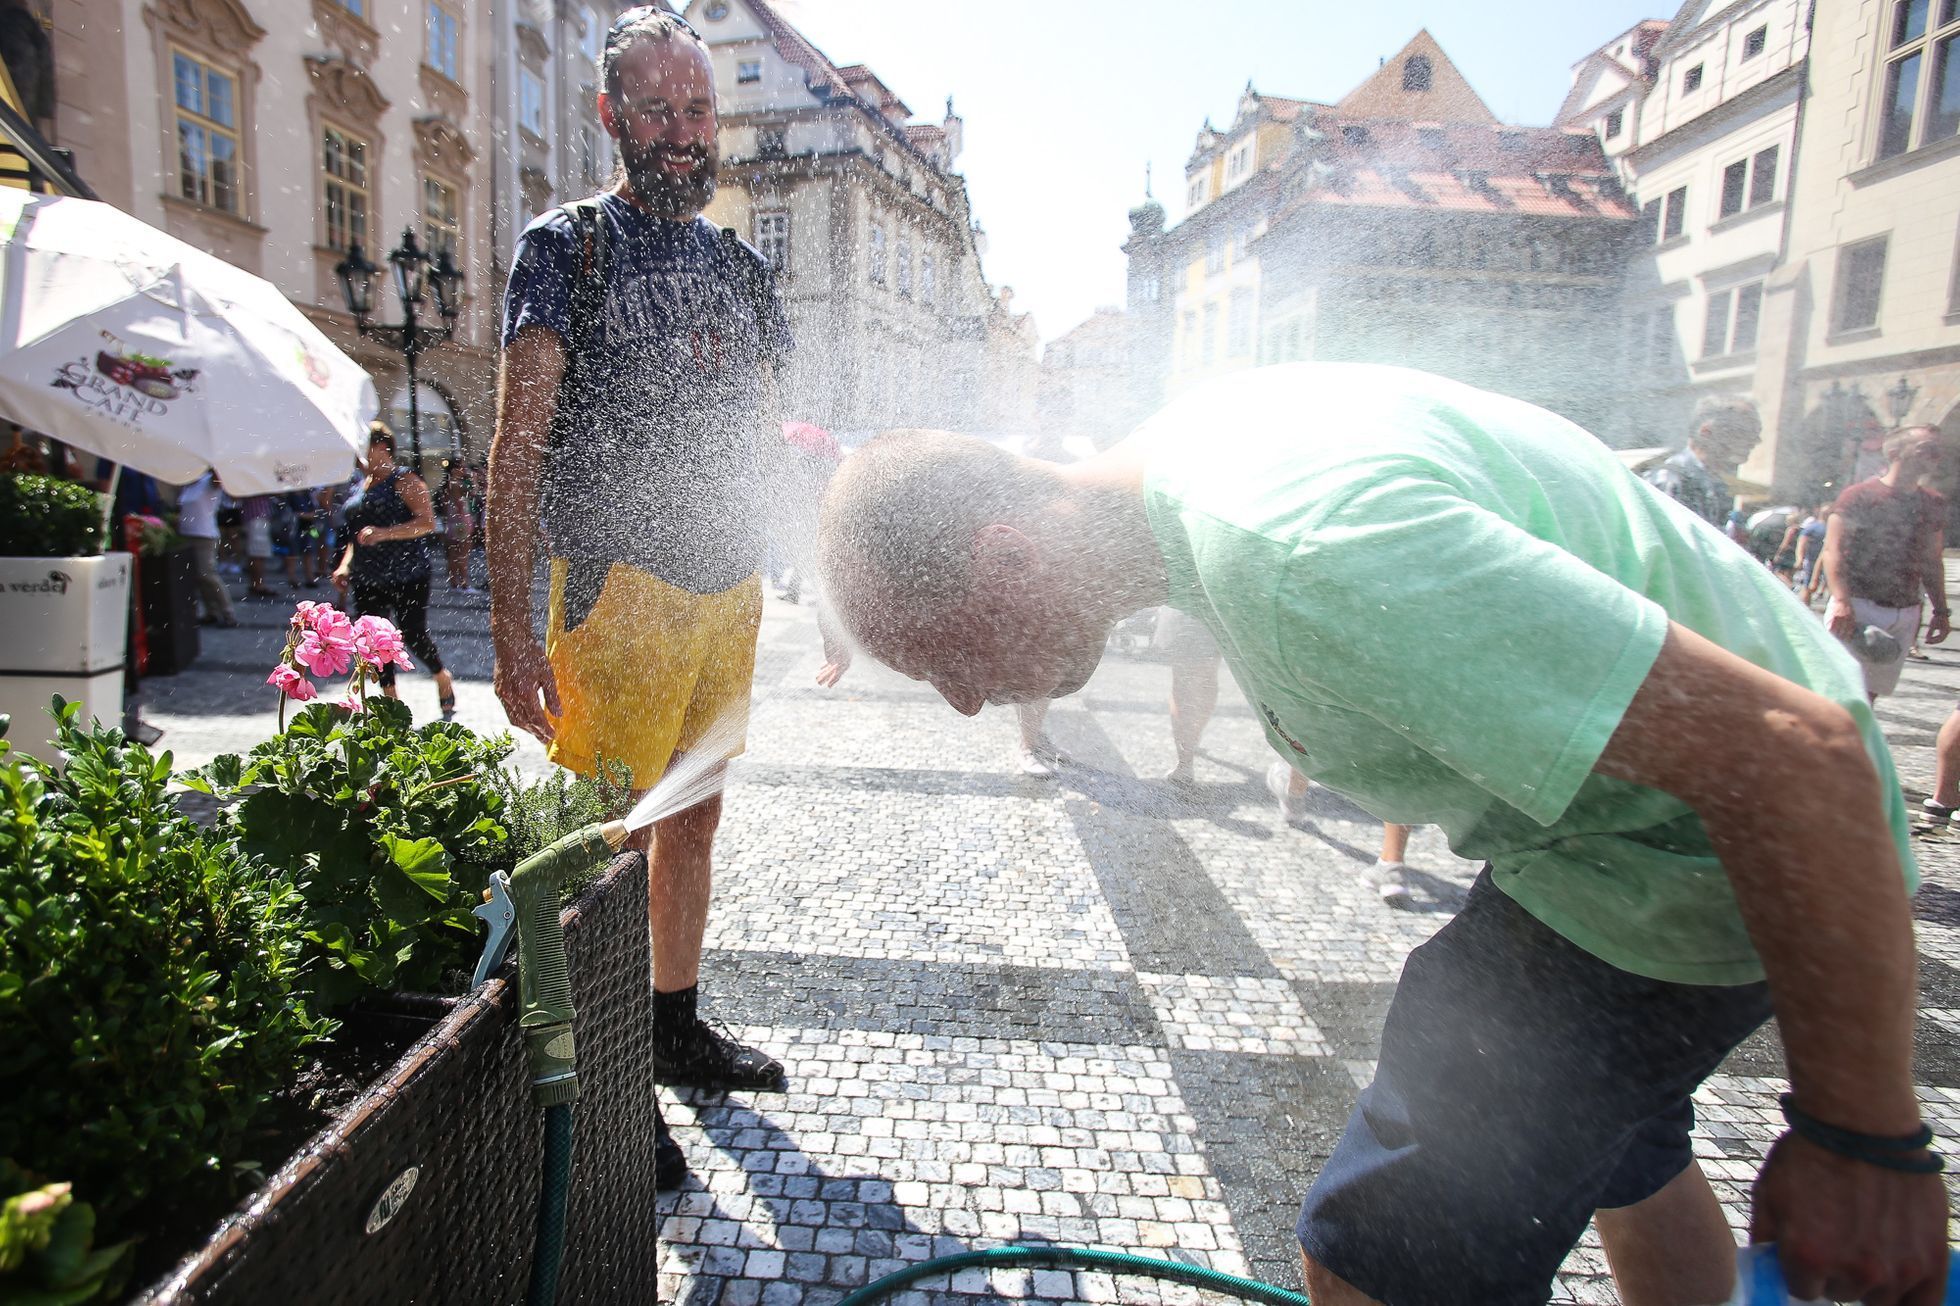 Vedro v Praze; teplo, slunce, voda, léto, turisté, koupání, osvěžení, žár, Žluté lázně, Staroměstské náměstí